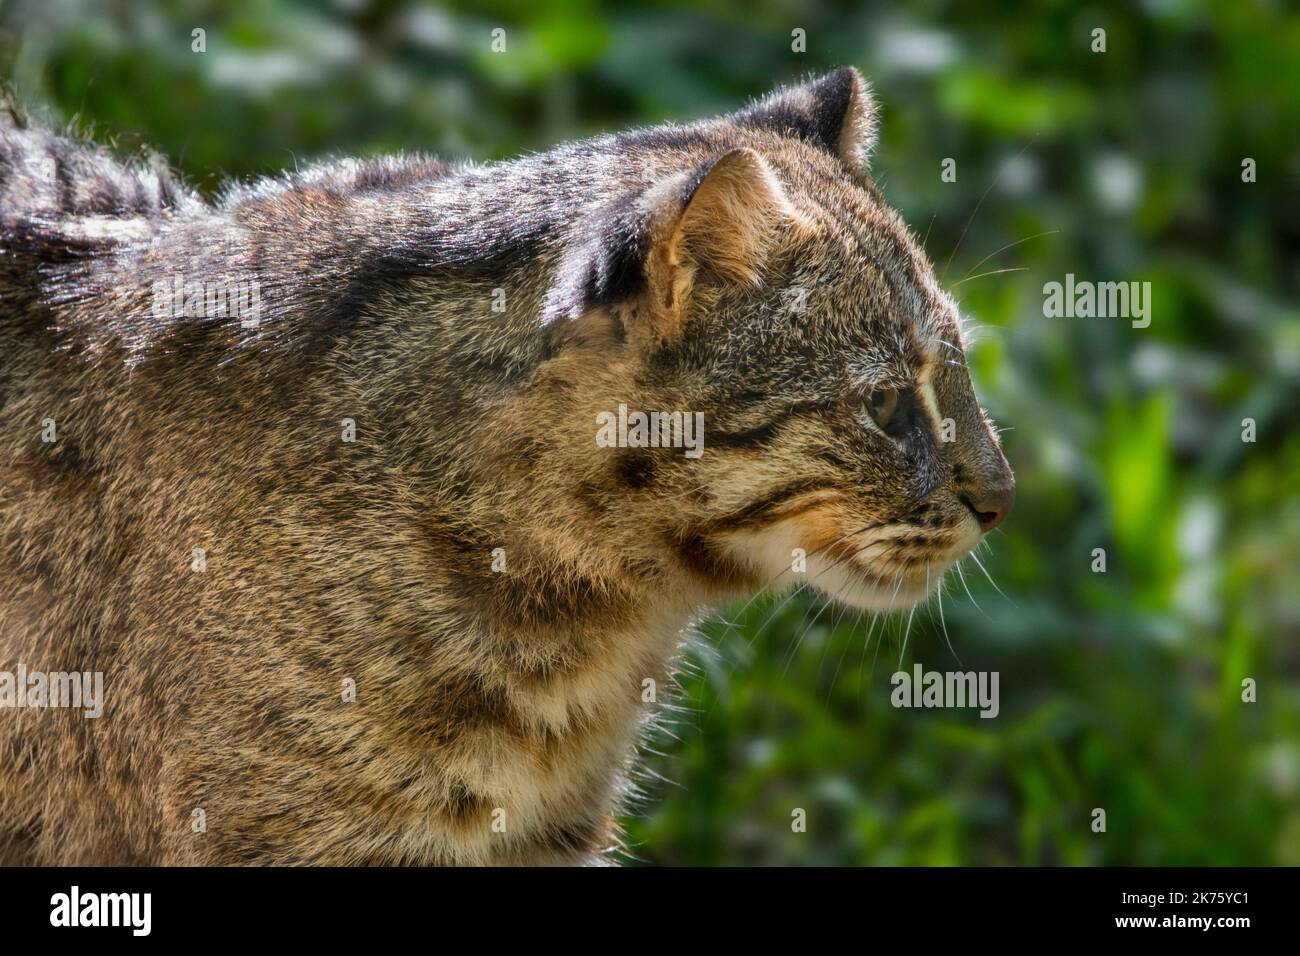 Chat léopard d'Amur / chat léopard de Sibérie (Prionailurus bengalensis euptilura) sous-espèce du chat léopard du Bengale originaire de l'extrême-Orient russe Banque D'Images